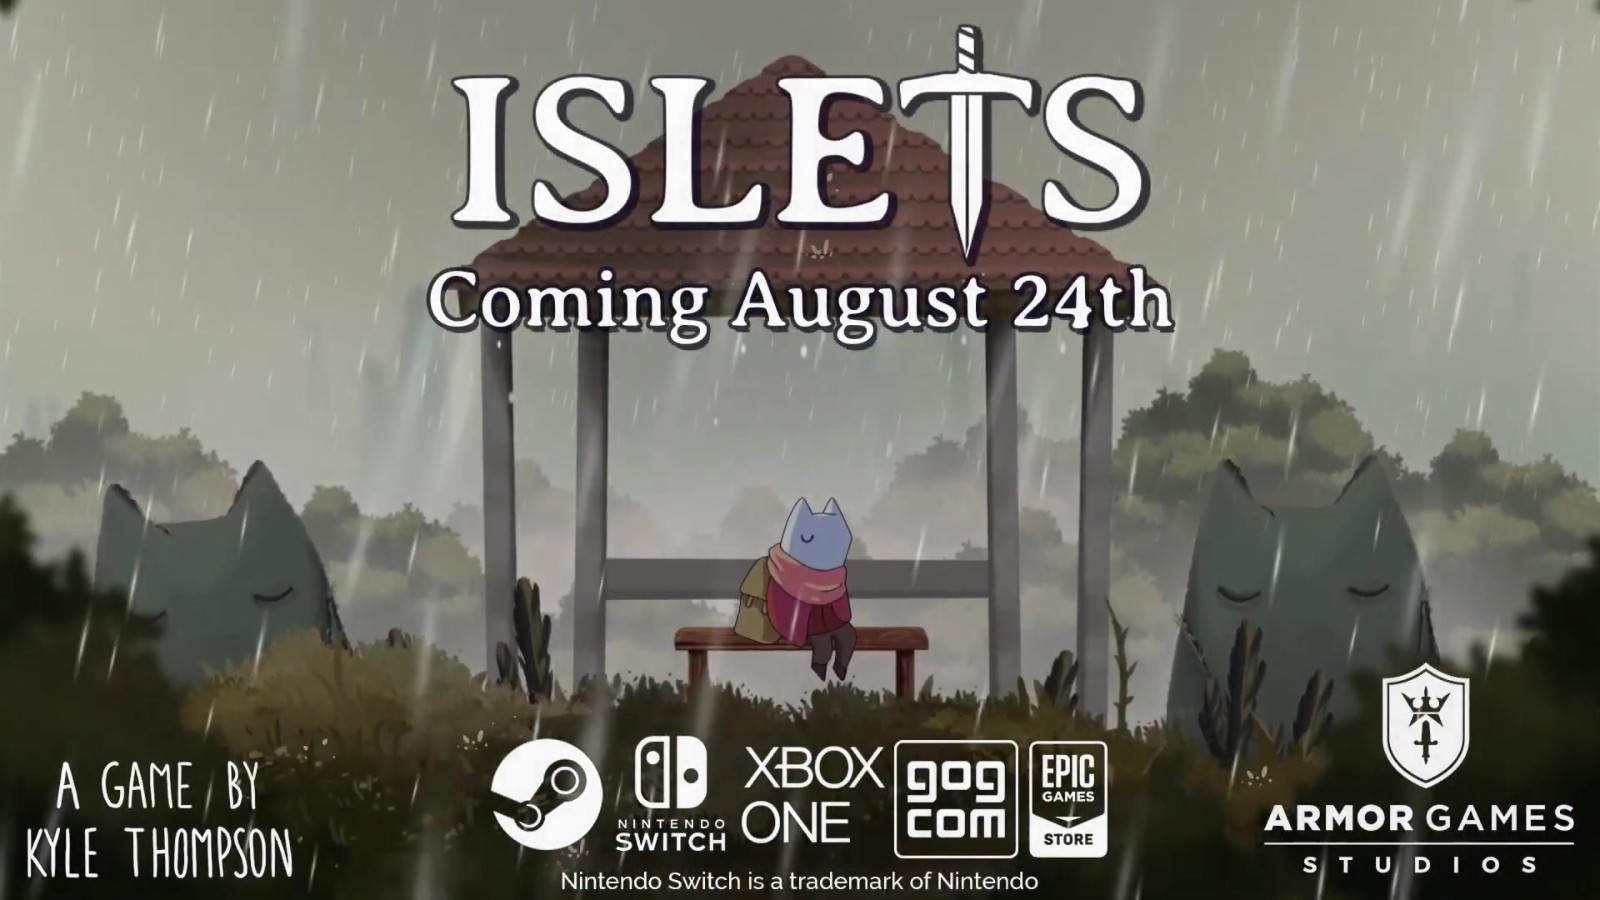 横版动作冒险游戏《Islets》将于8月24日上线多平台